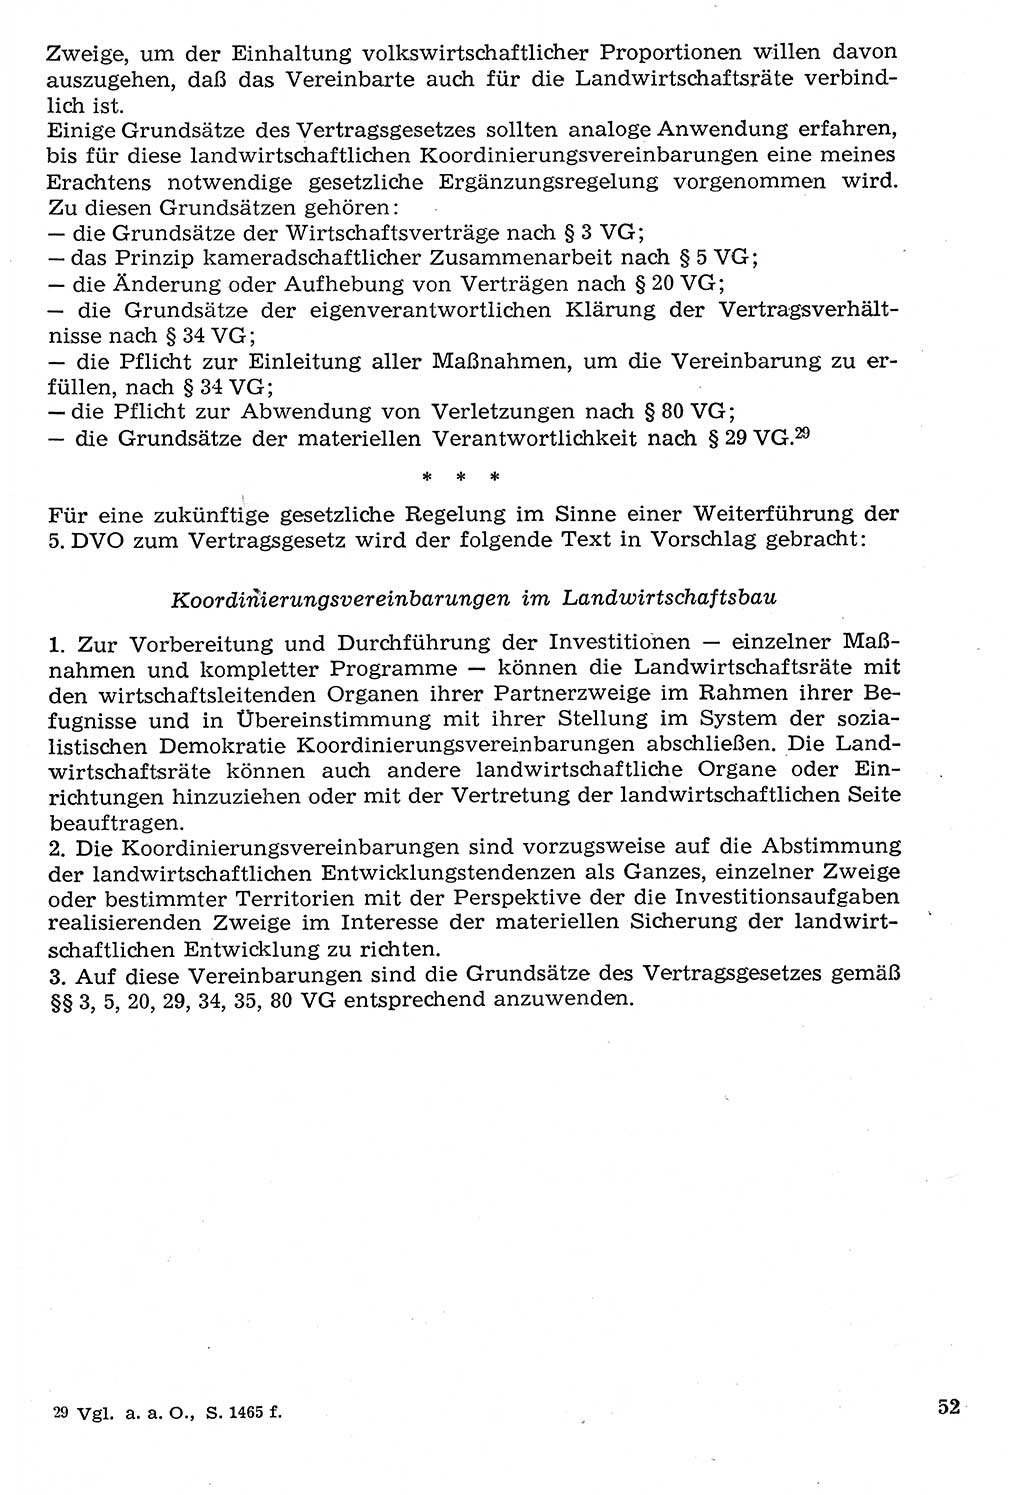 Staat und Recht (StuR), 17. Jahrgang [Deutsche Demokratische Republik (DDR)] 1968, Seite 52 (StuR DDR 1968, S. 52)